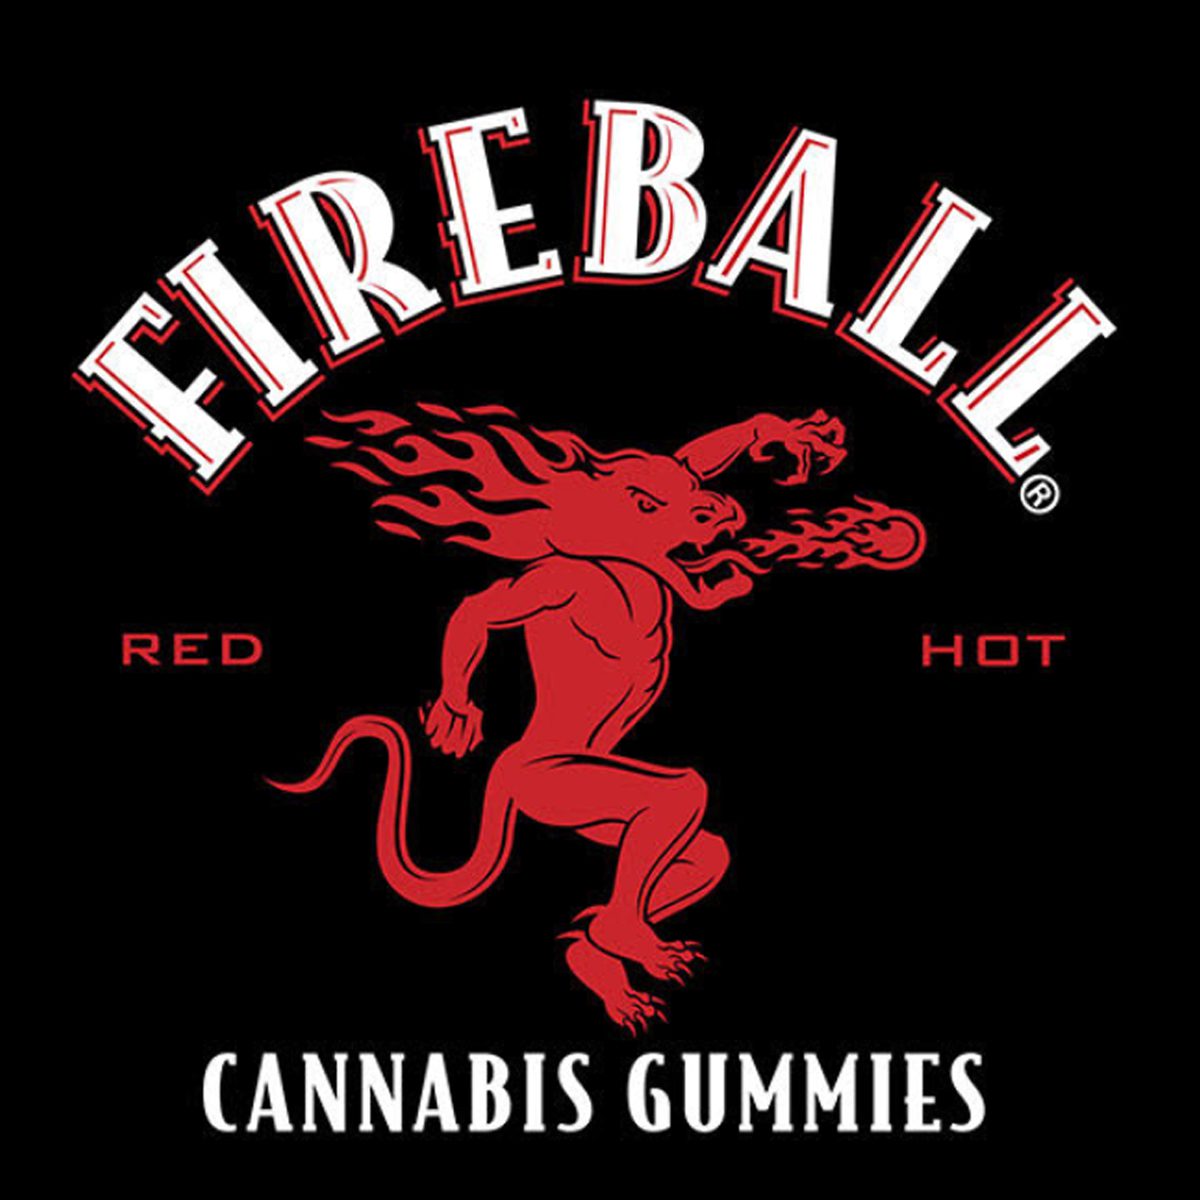 Fireball Cannabis Gummies